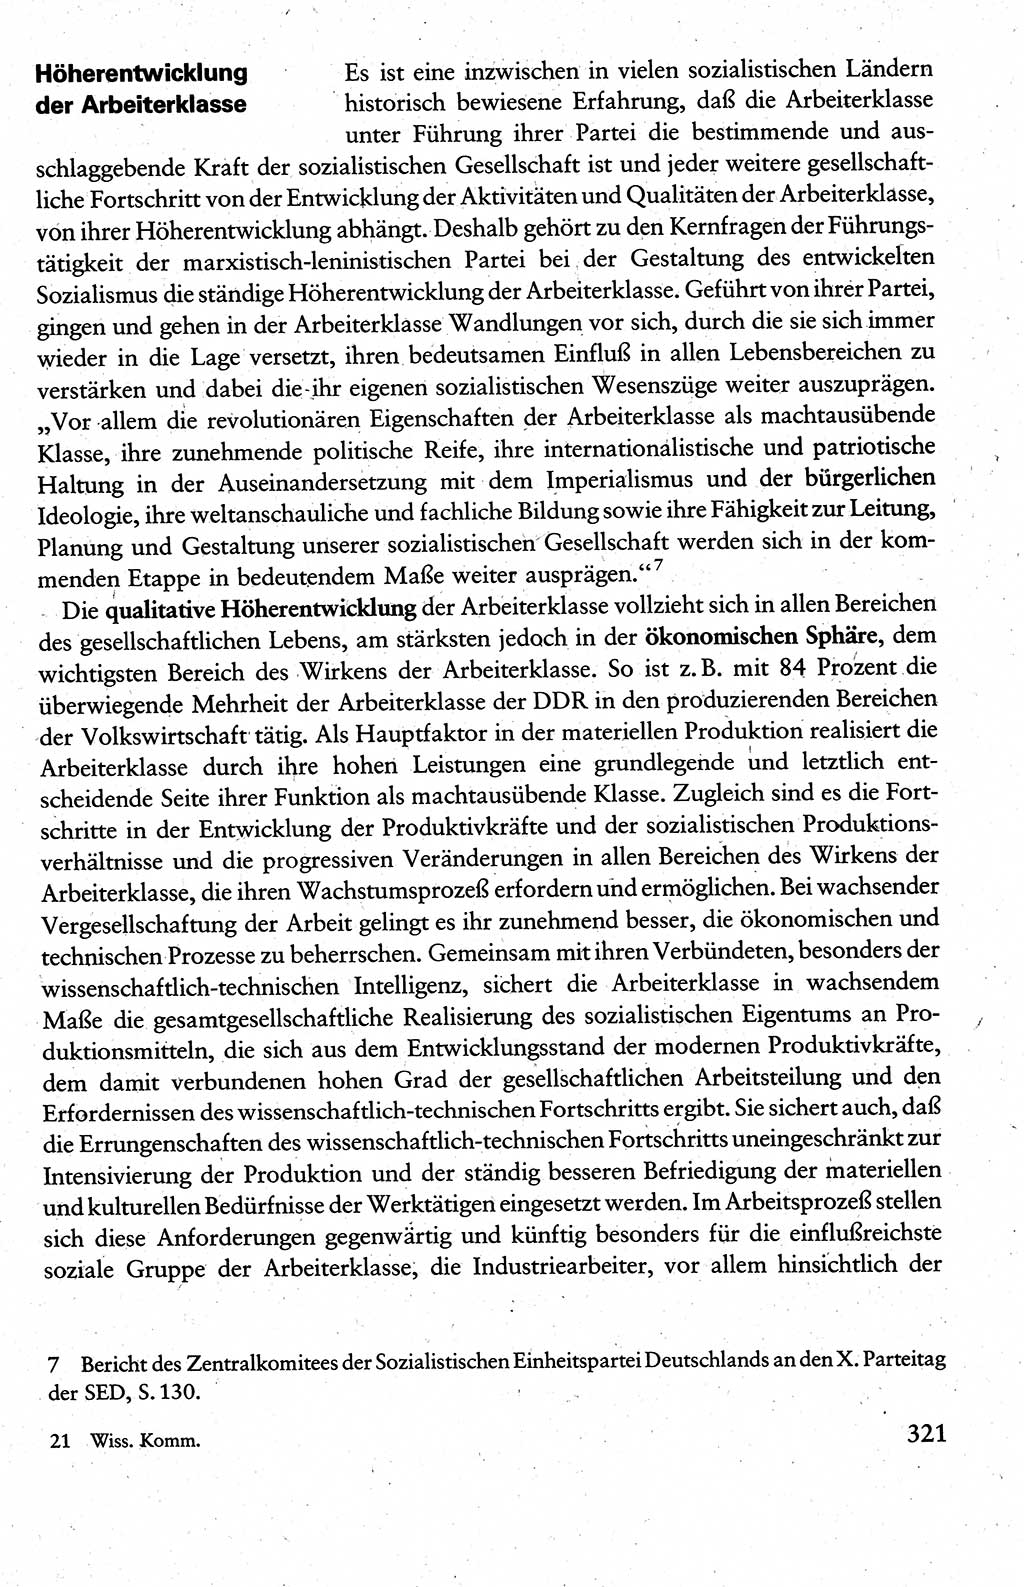 Wissenschaftlicher Kommunismus [Deutsche Demokratische Republik (DDR)], Lehrbuch für das marxistisch-leninistische Grundlagenstudium 1983, Seite 321 (Wiss. Komm. DDR Lb. 1983, S. 321)